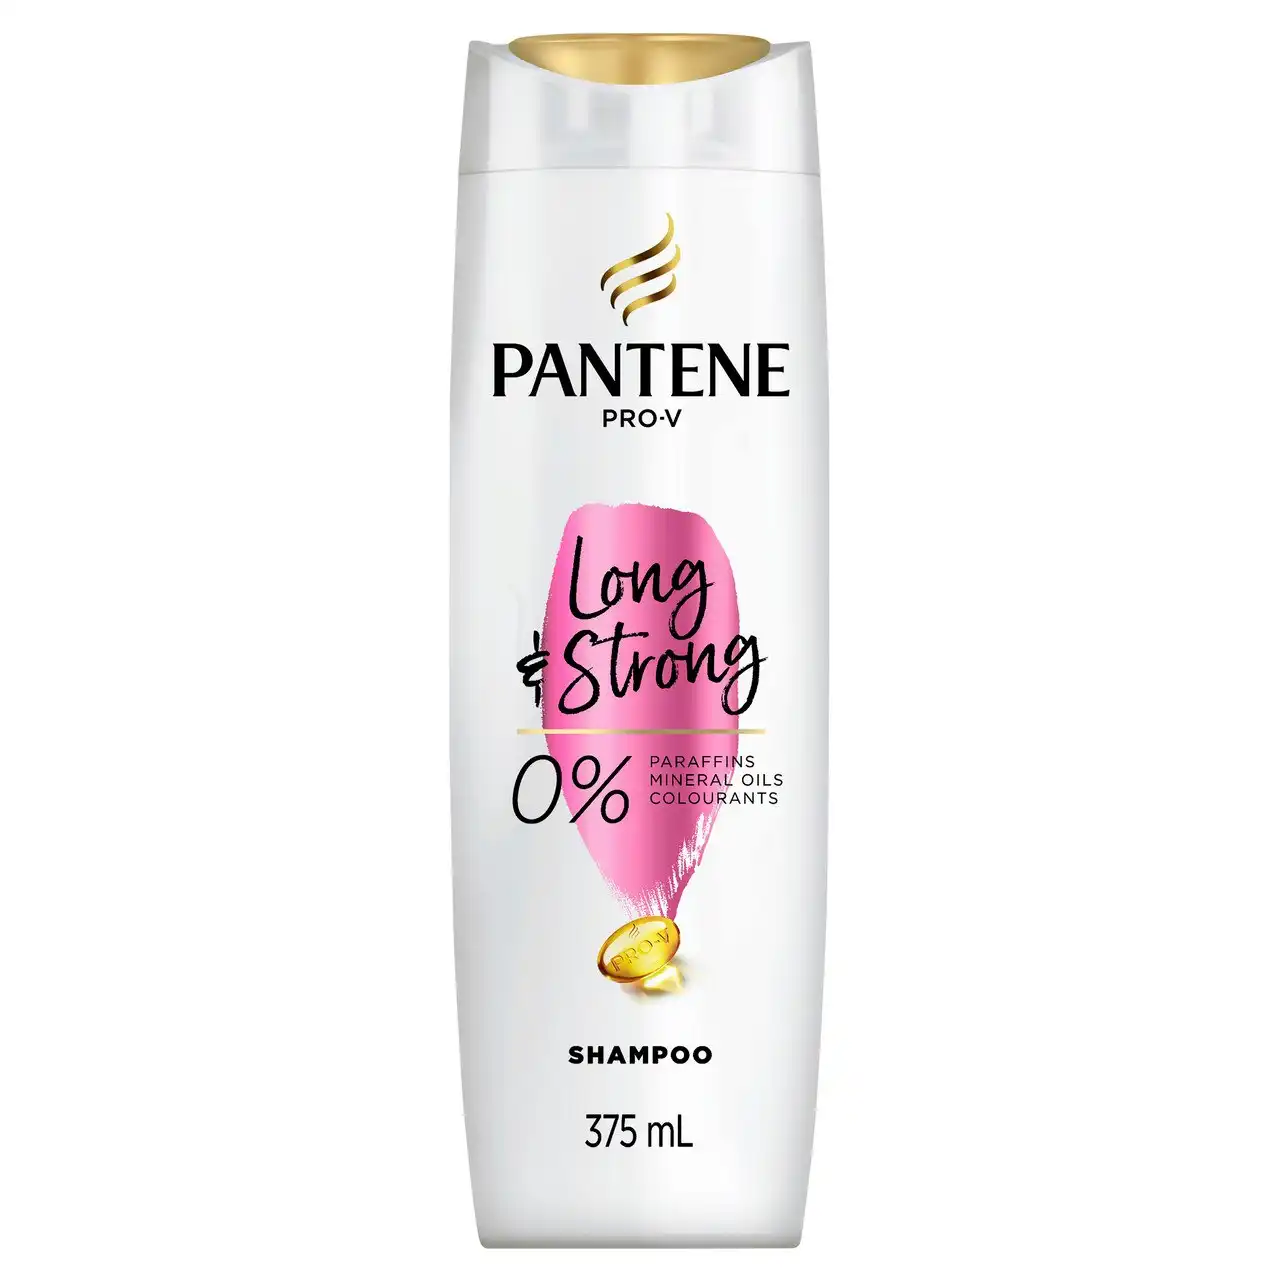 Pantene Pro-V Long & Strong Shampoo: Strengthening Shampoo for Dry, Damaged Hair 375 ml